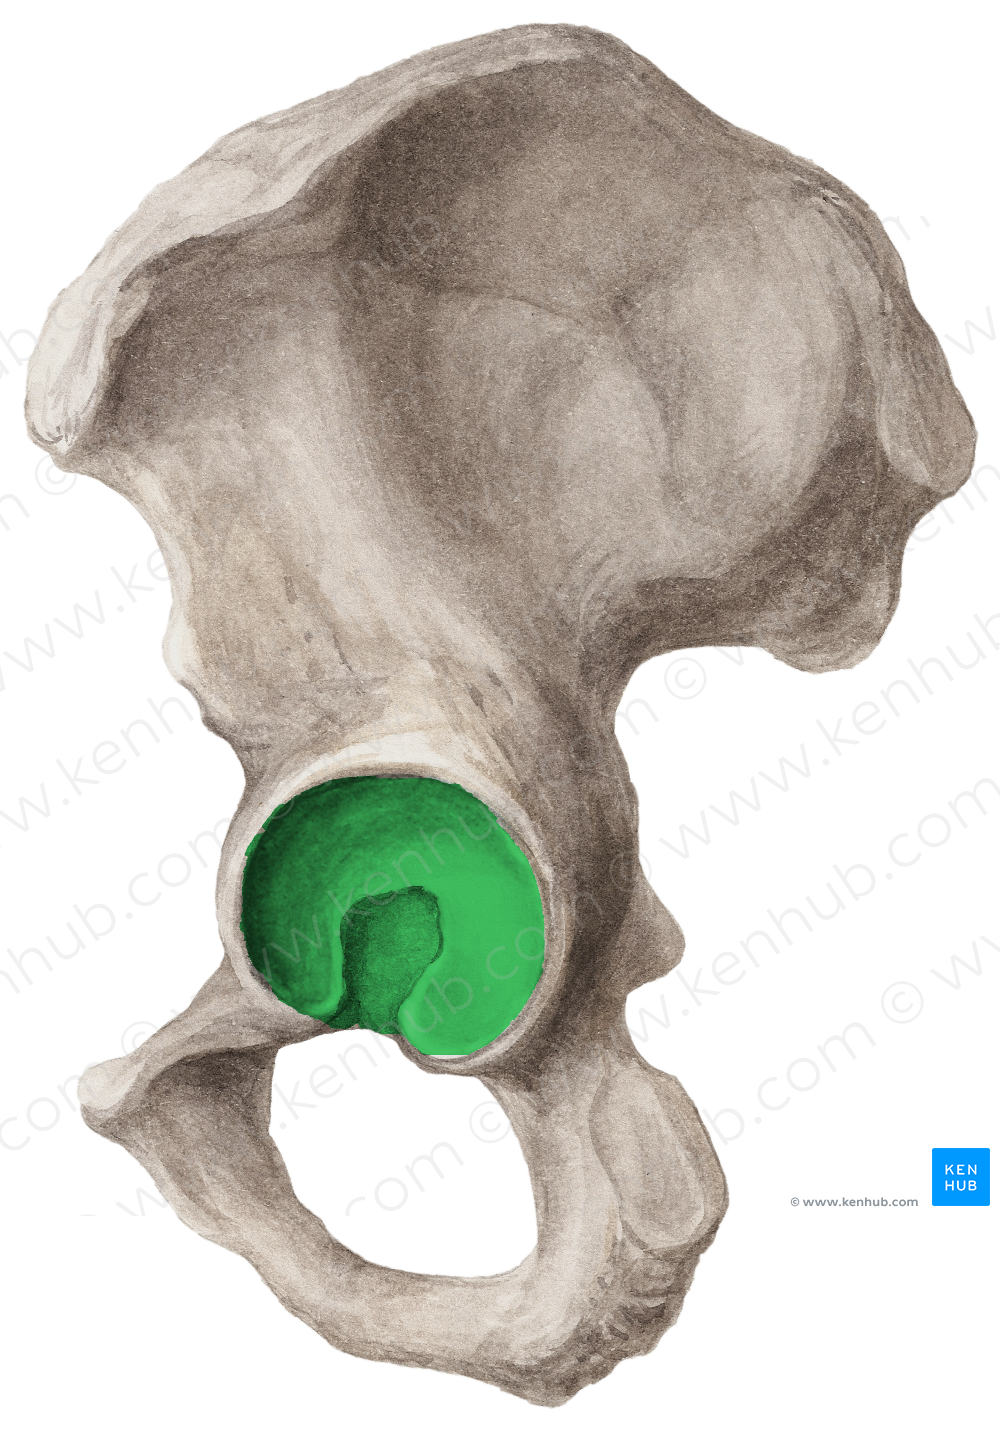 Acetabulum of hip bone (#584)